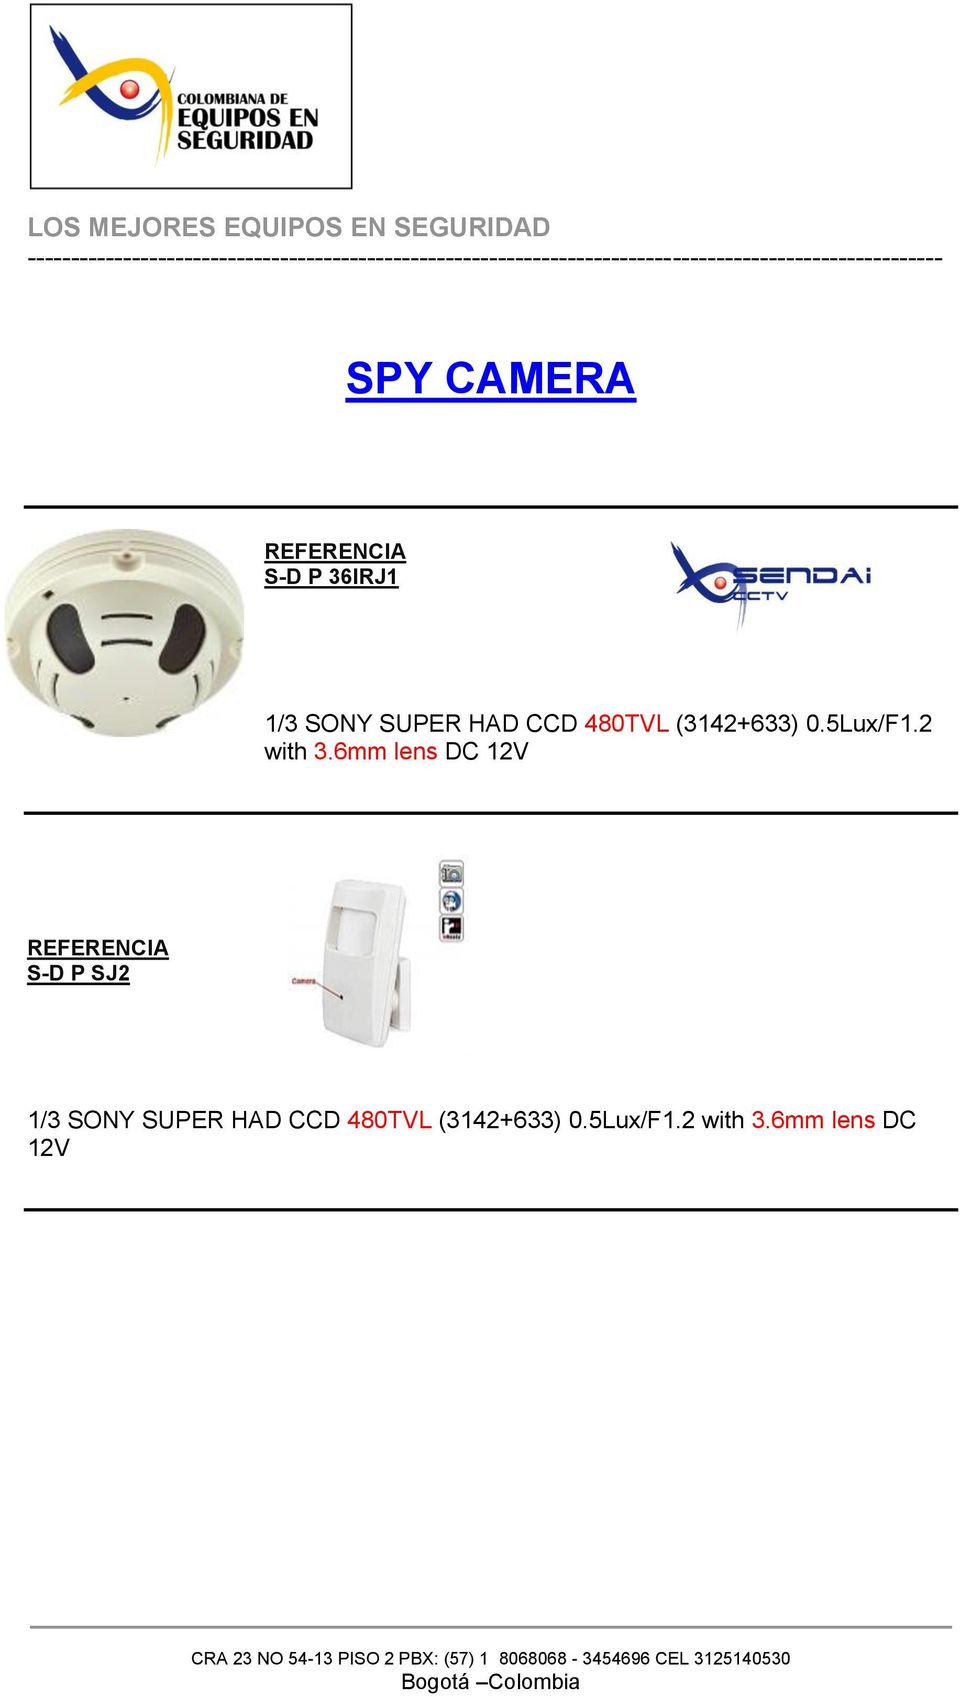 6mm lens DC 12V S-D P SJ2 1/3 SONY SUPER HAD